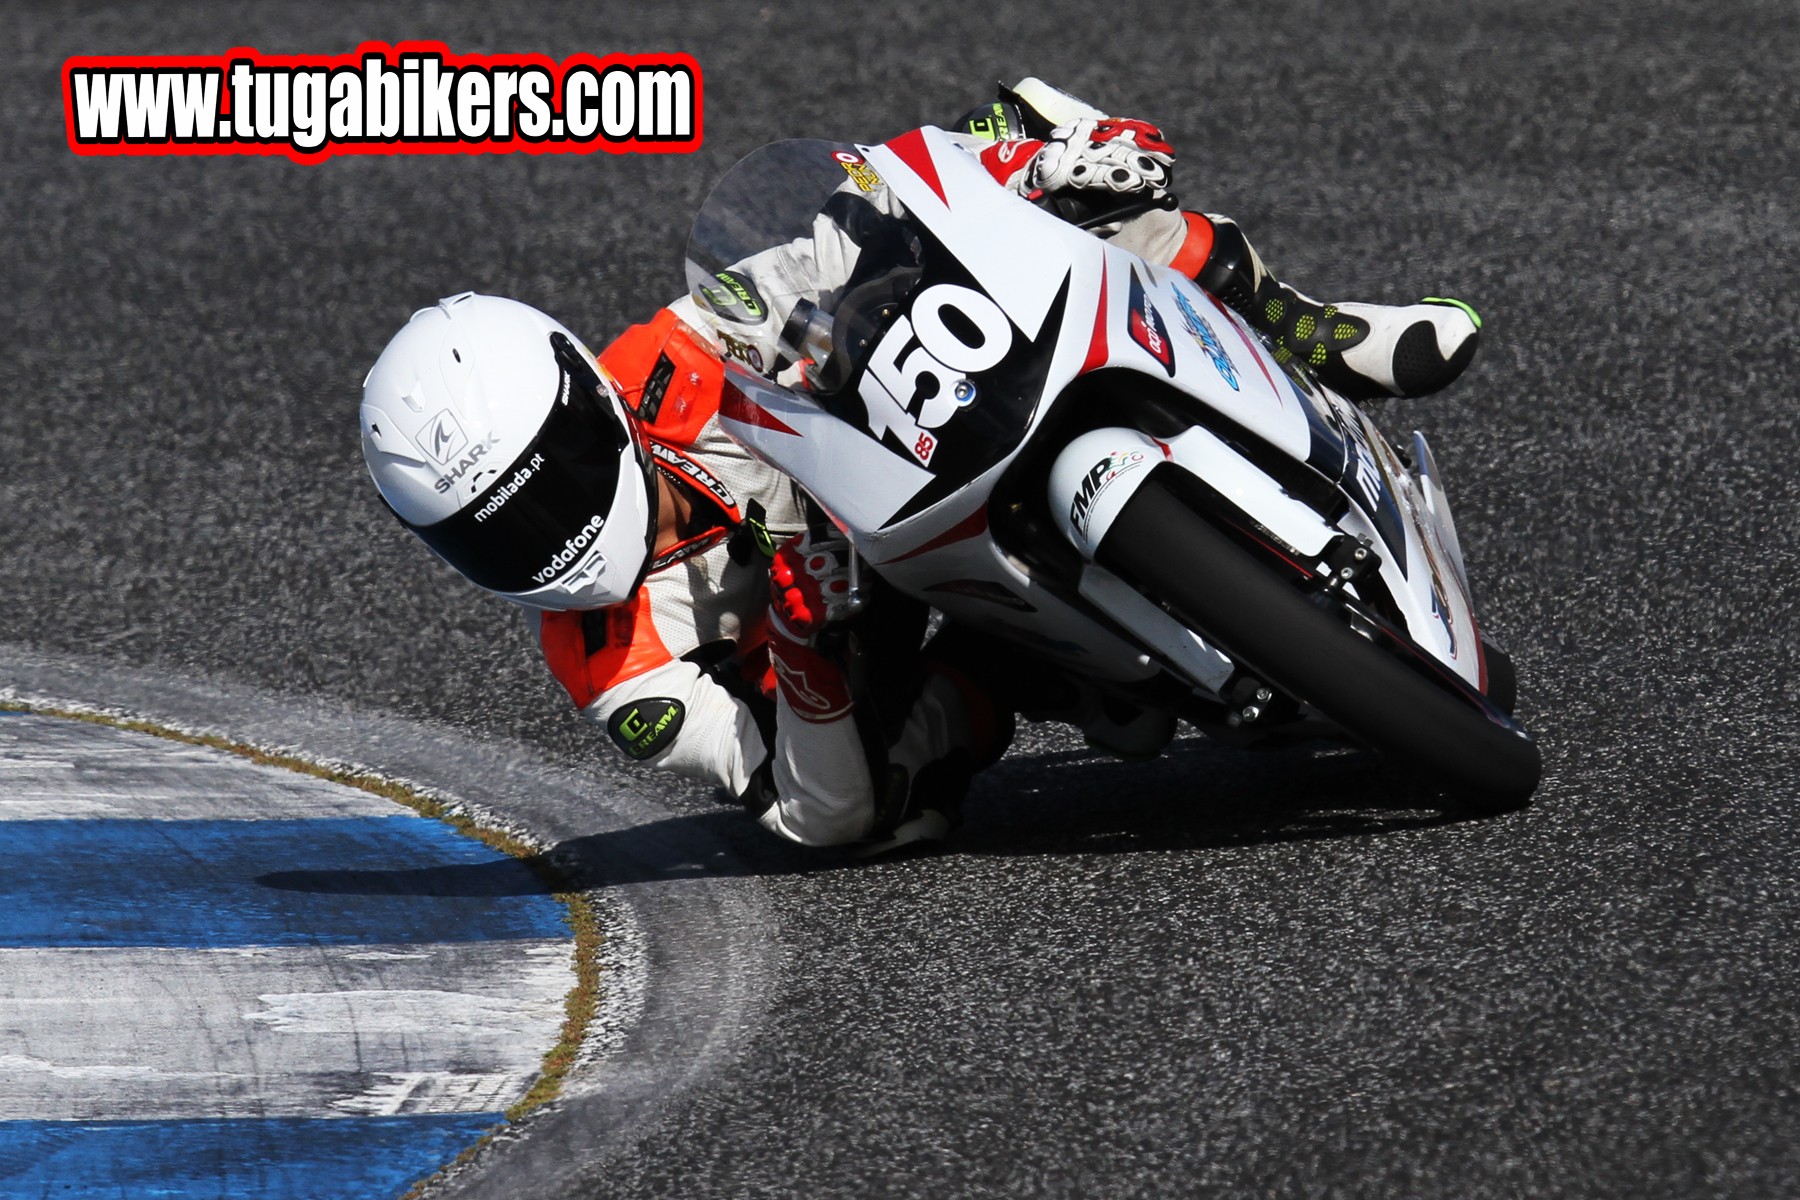 Campeonato Nacional de Velocidade Motosport Vodafone 2014 - Estoril II - 8 de Junho  Fotografias e Resumo da Prova   - Pgina 5 44ij